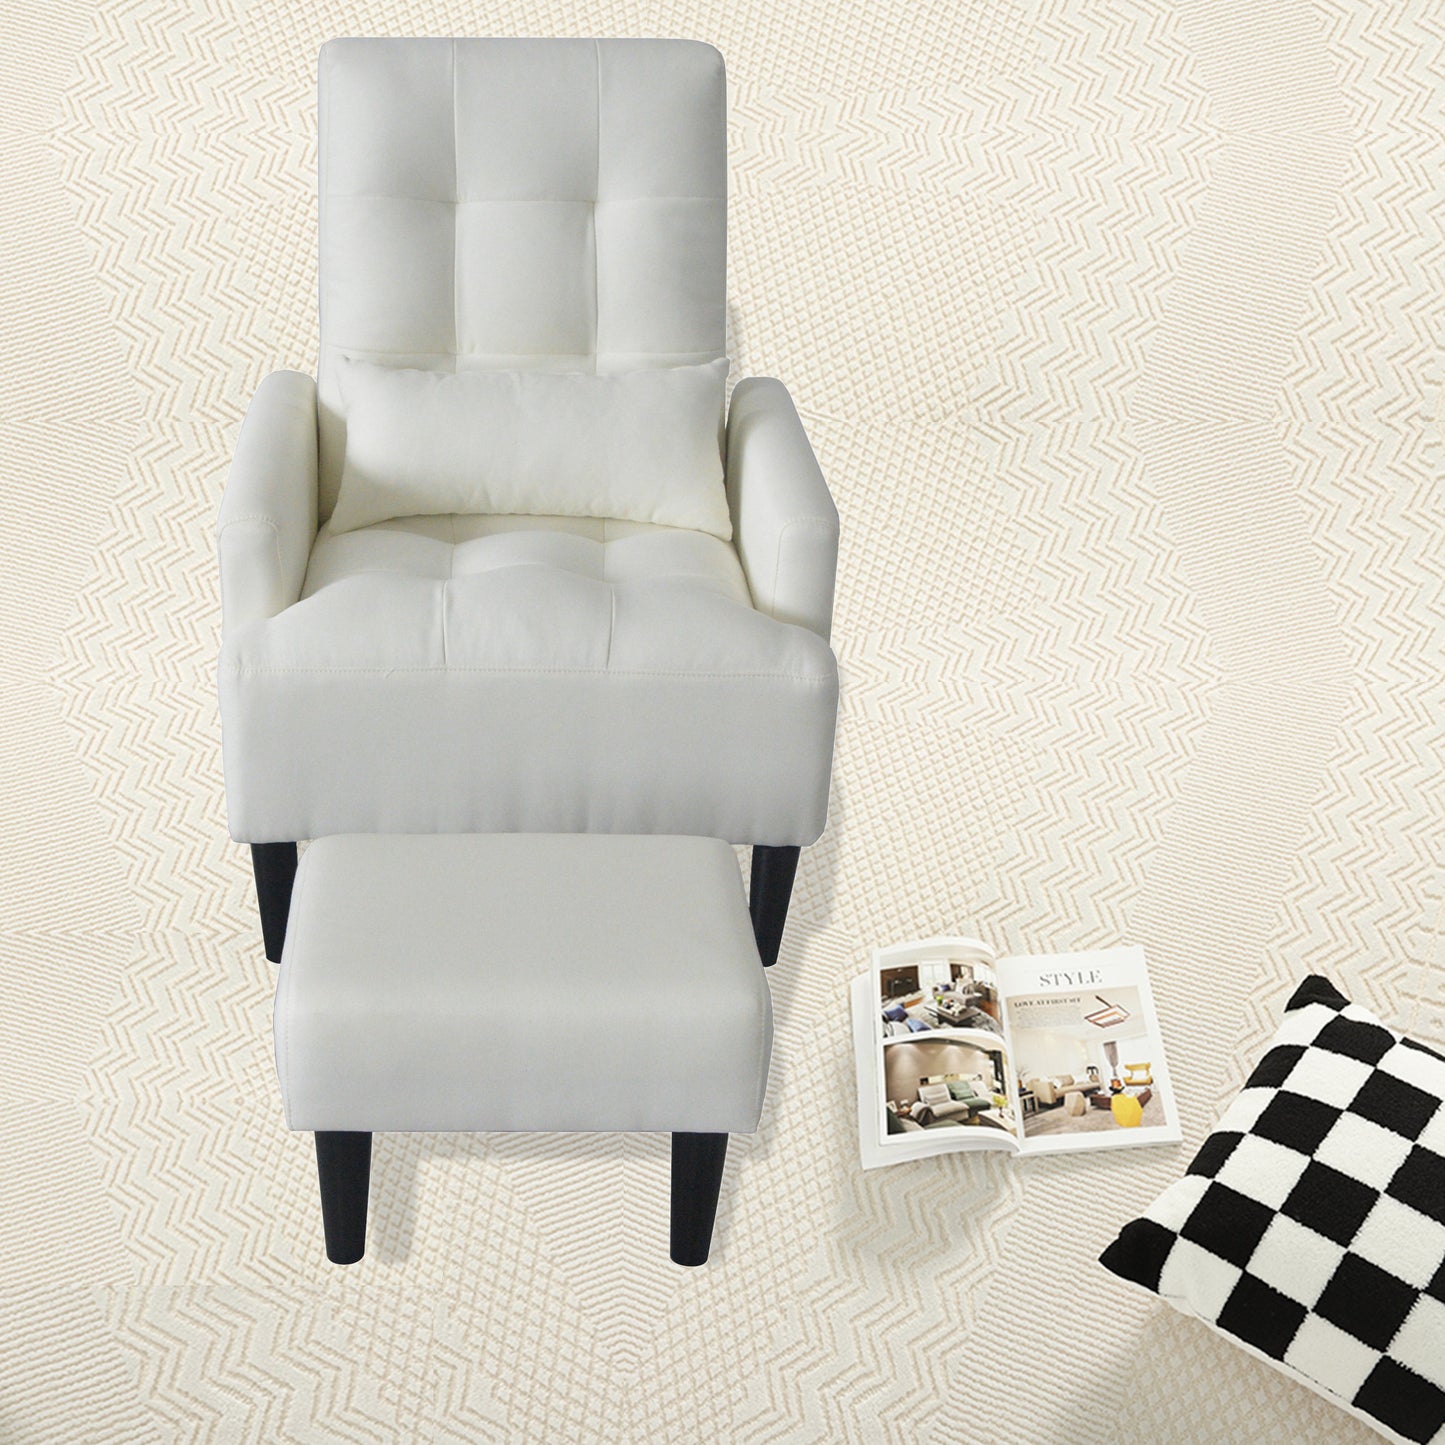 1st Choice Modern Design Cream White Recliner Soft Cozy Sofa Chair